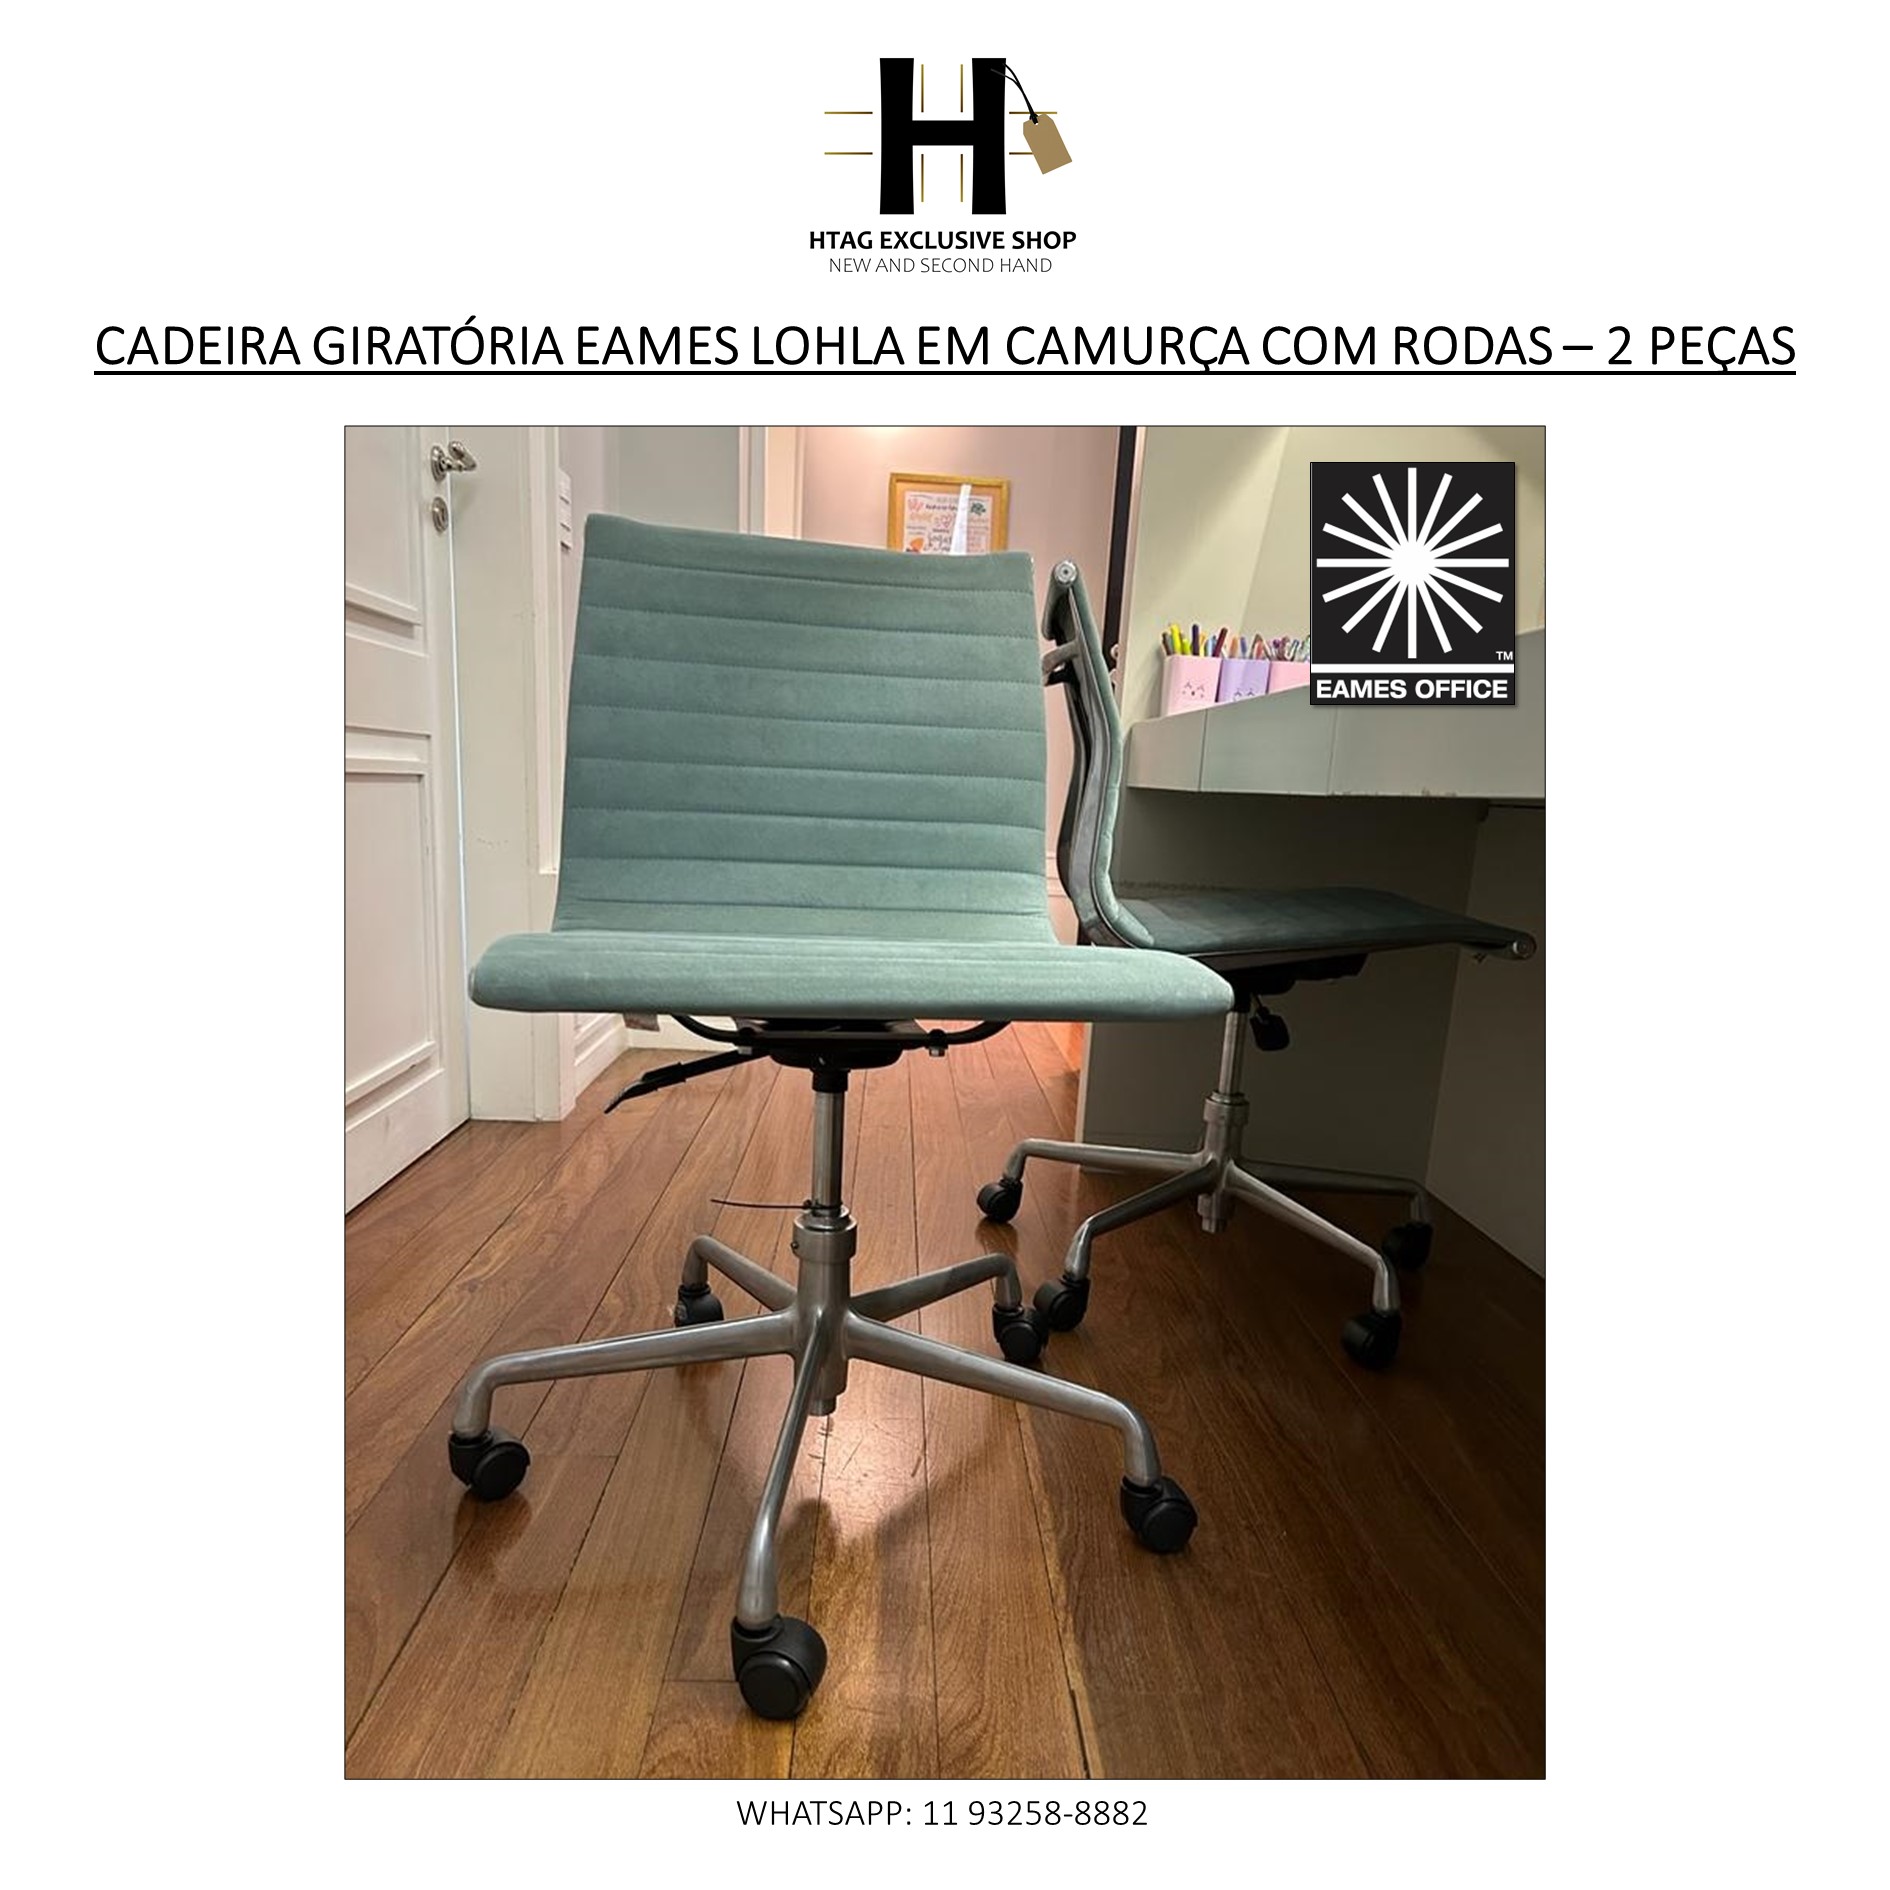 CADEIRA GIRATÓRIA EAMES LOHLA COM RODAS EM CAMURÇA VERDE - HTAG EXCLUSIVE  SHOP - New & Second Hand